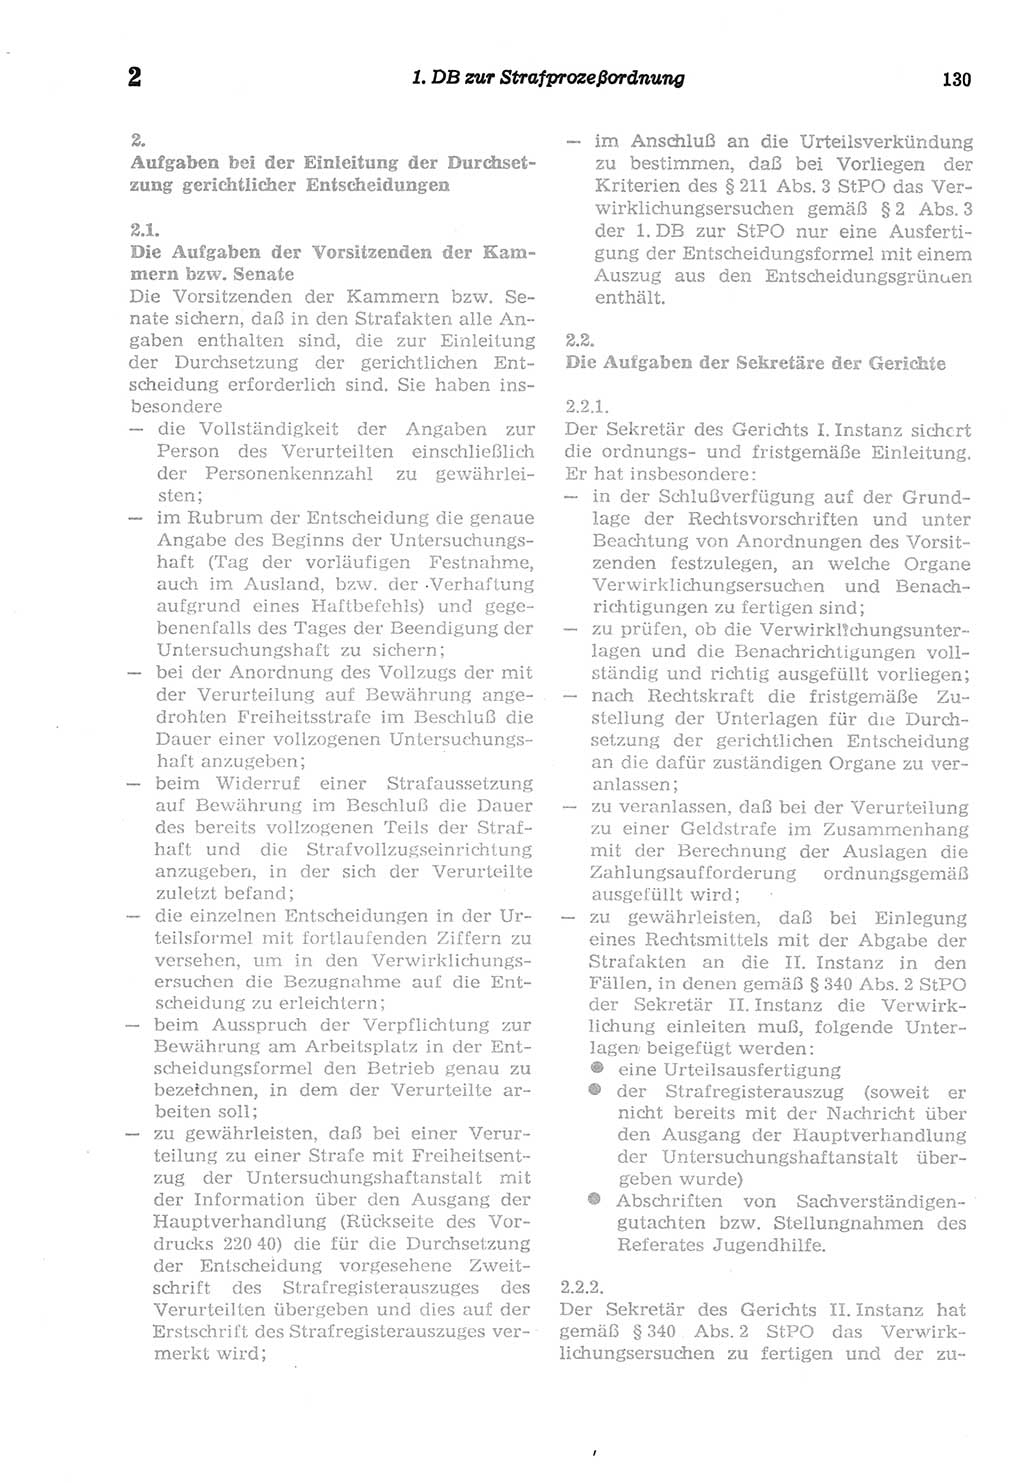 Strafprozeßordnung (StPO) der Deutschen Demokratischen Republik (DDR) sowie angrenzende Gesetze und Bestimmungen 1977, Seite 130 (StPO DDR Ges. Best. 1977, S. 130)